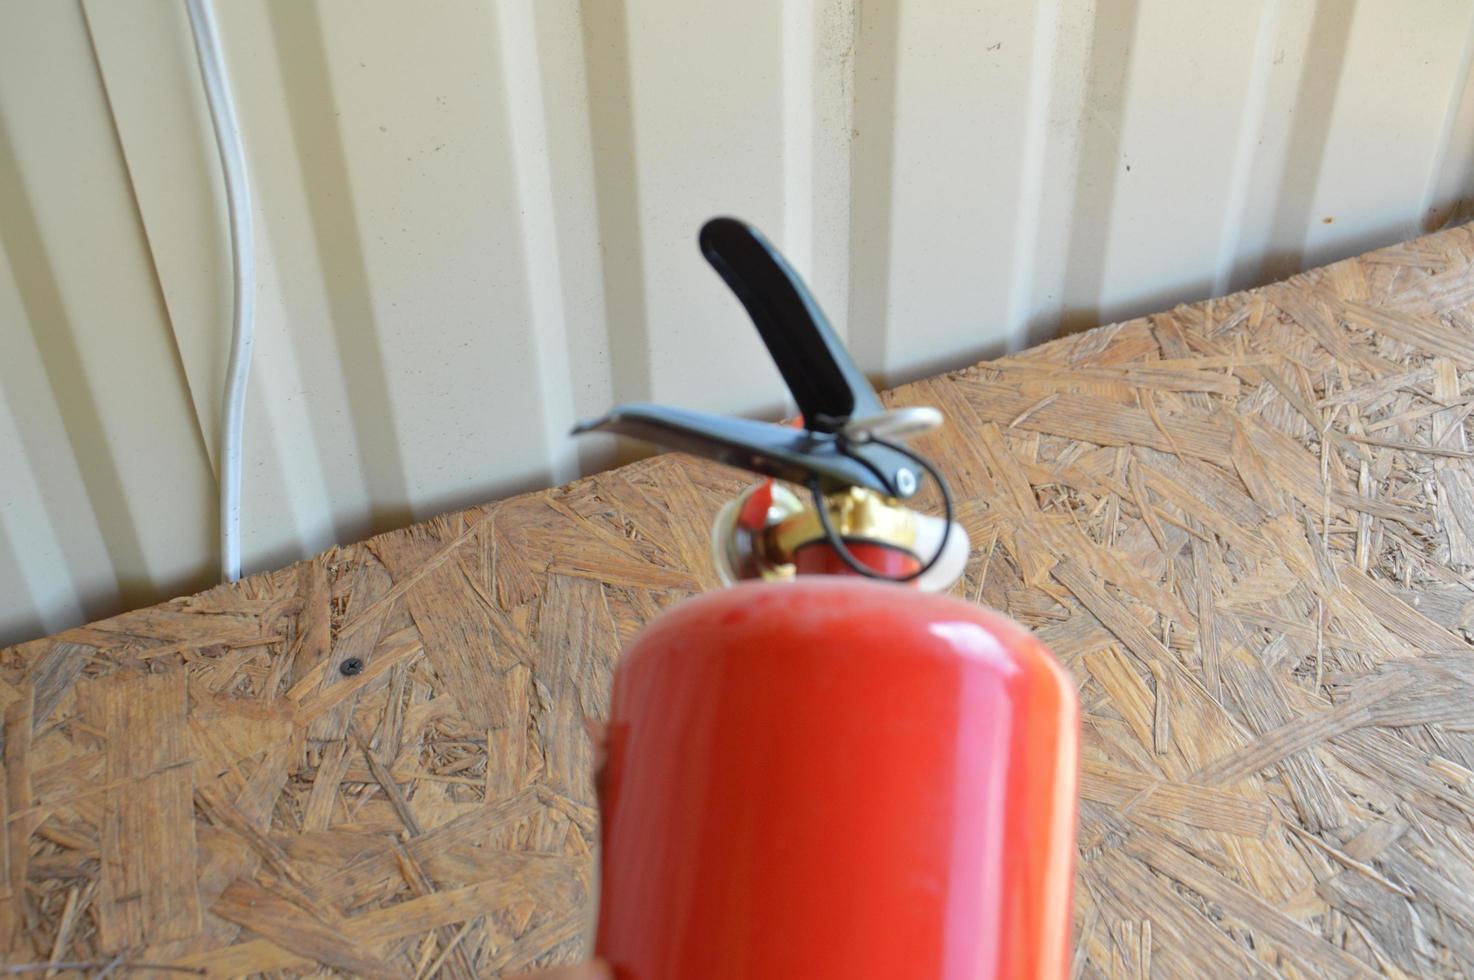 draagbare brandblusser om huis en interieur te beschermen tegen brand foto